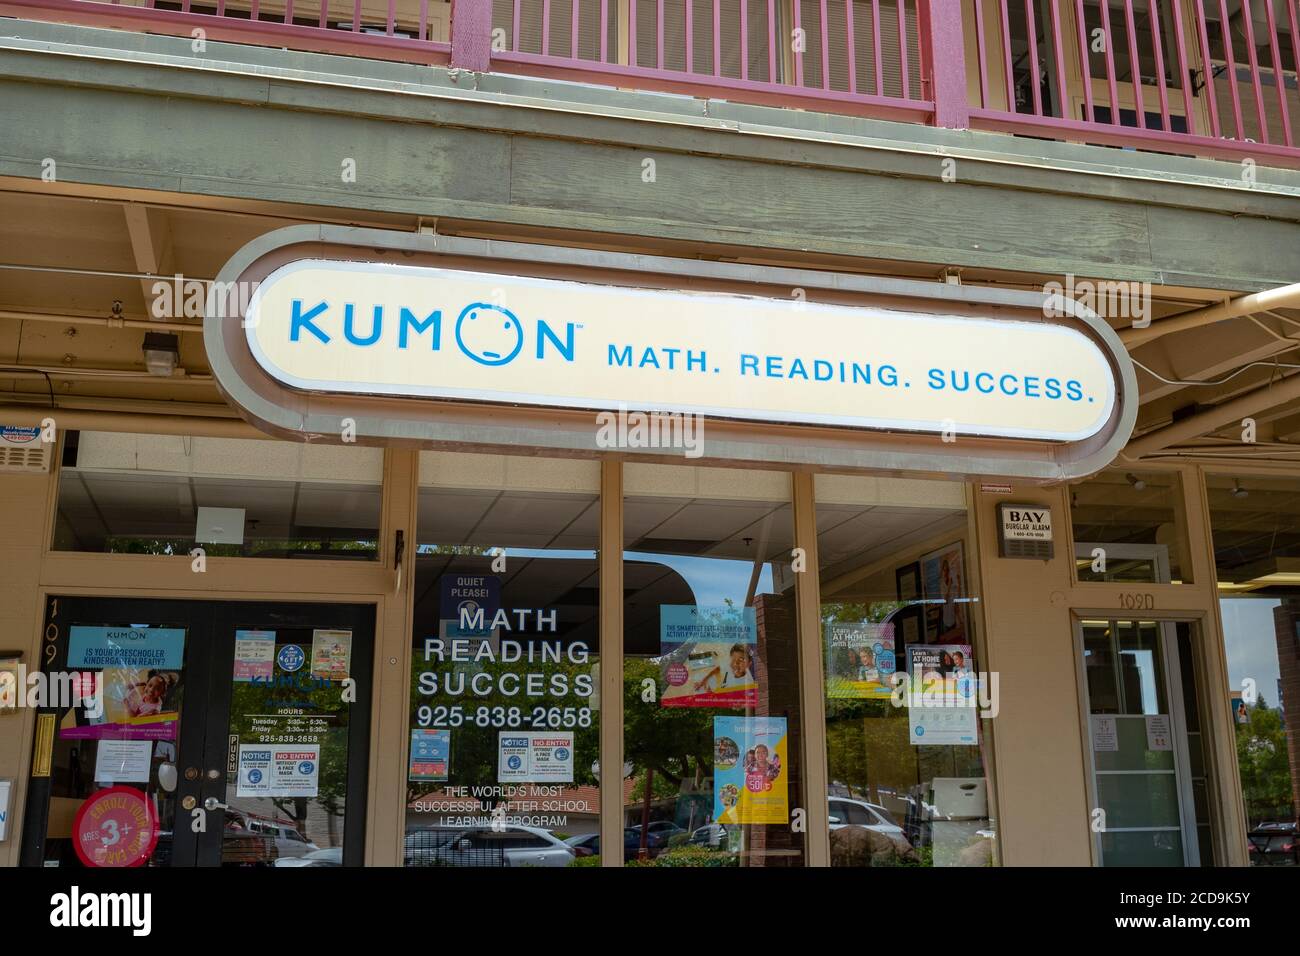 Façade avec enseigne pour le centre de formation en mathématiques et en lecture de la marque Kumon, Danville, Californie, 10 juin 2020. () Banque D'Images